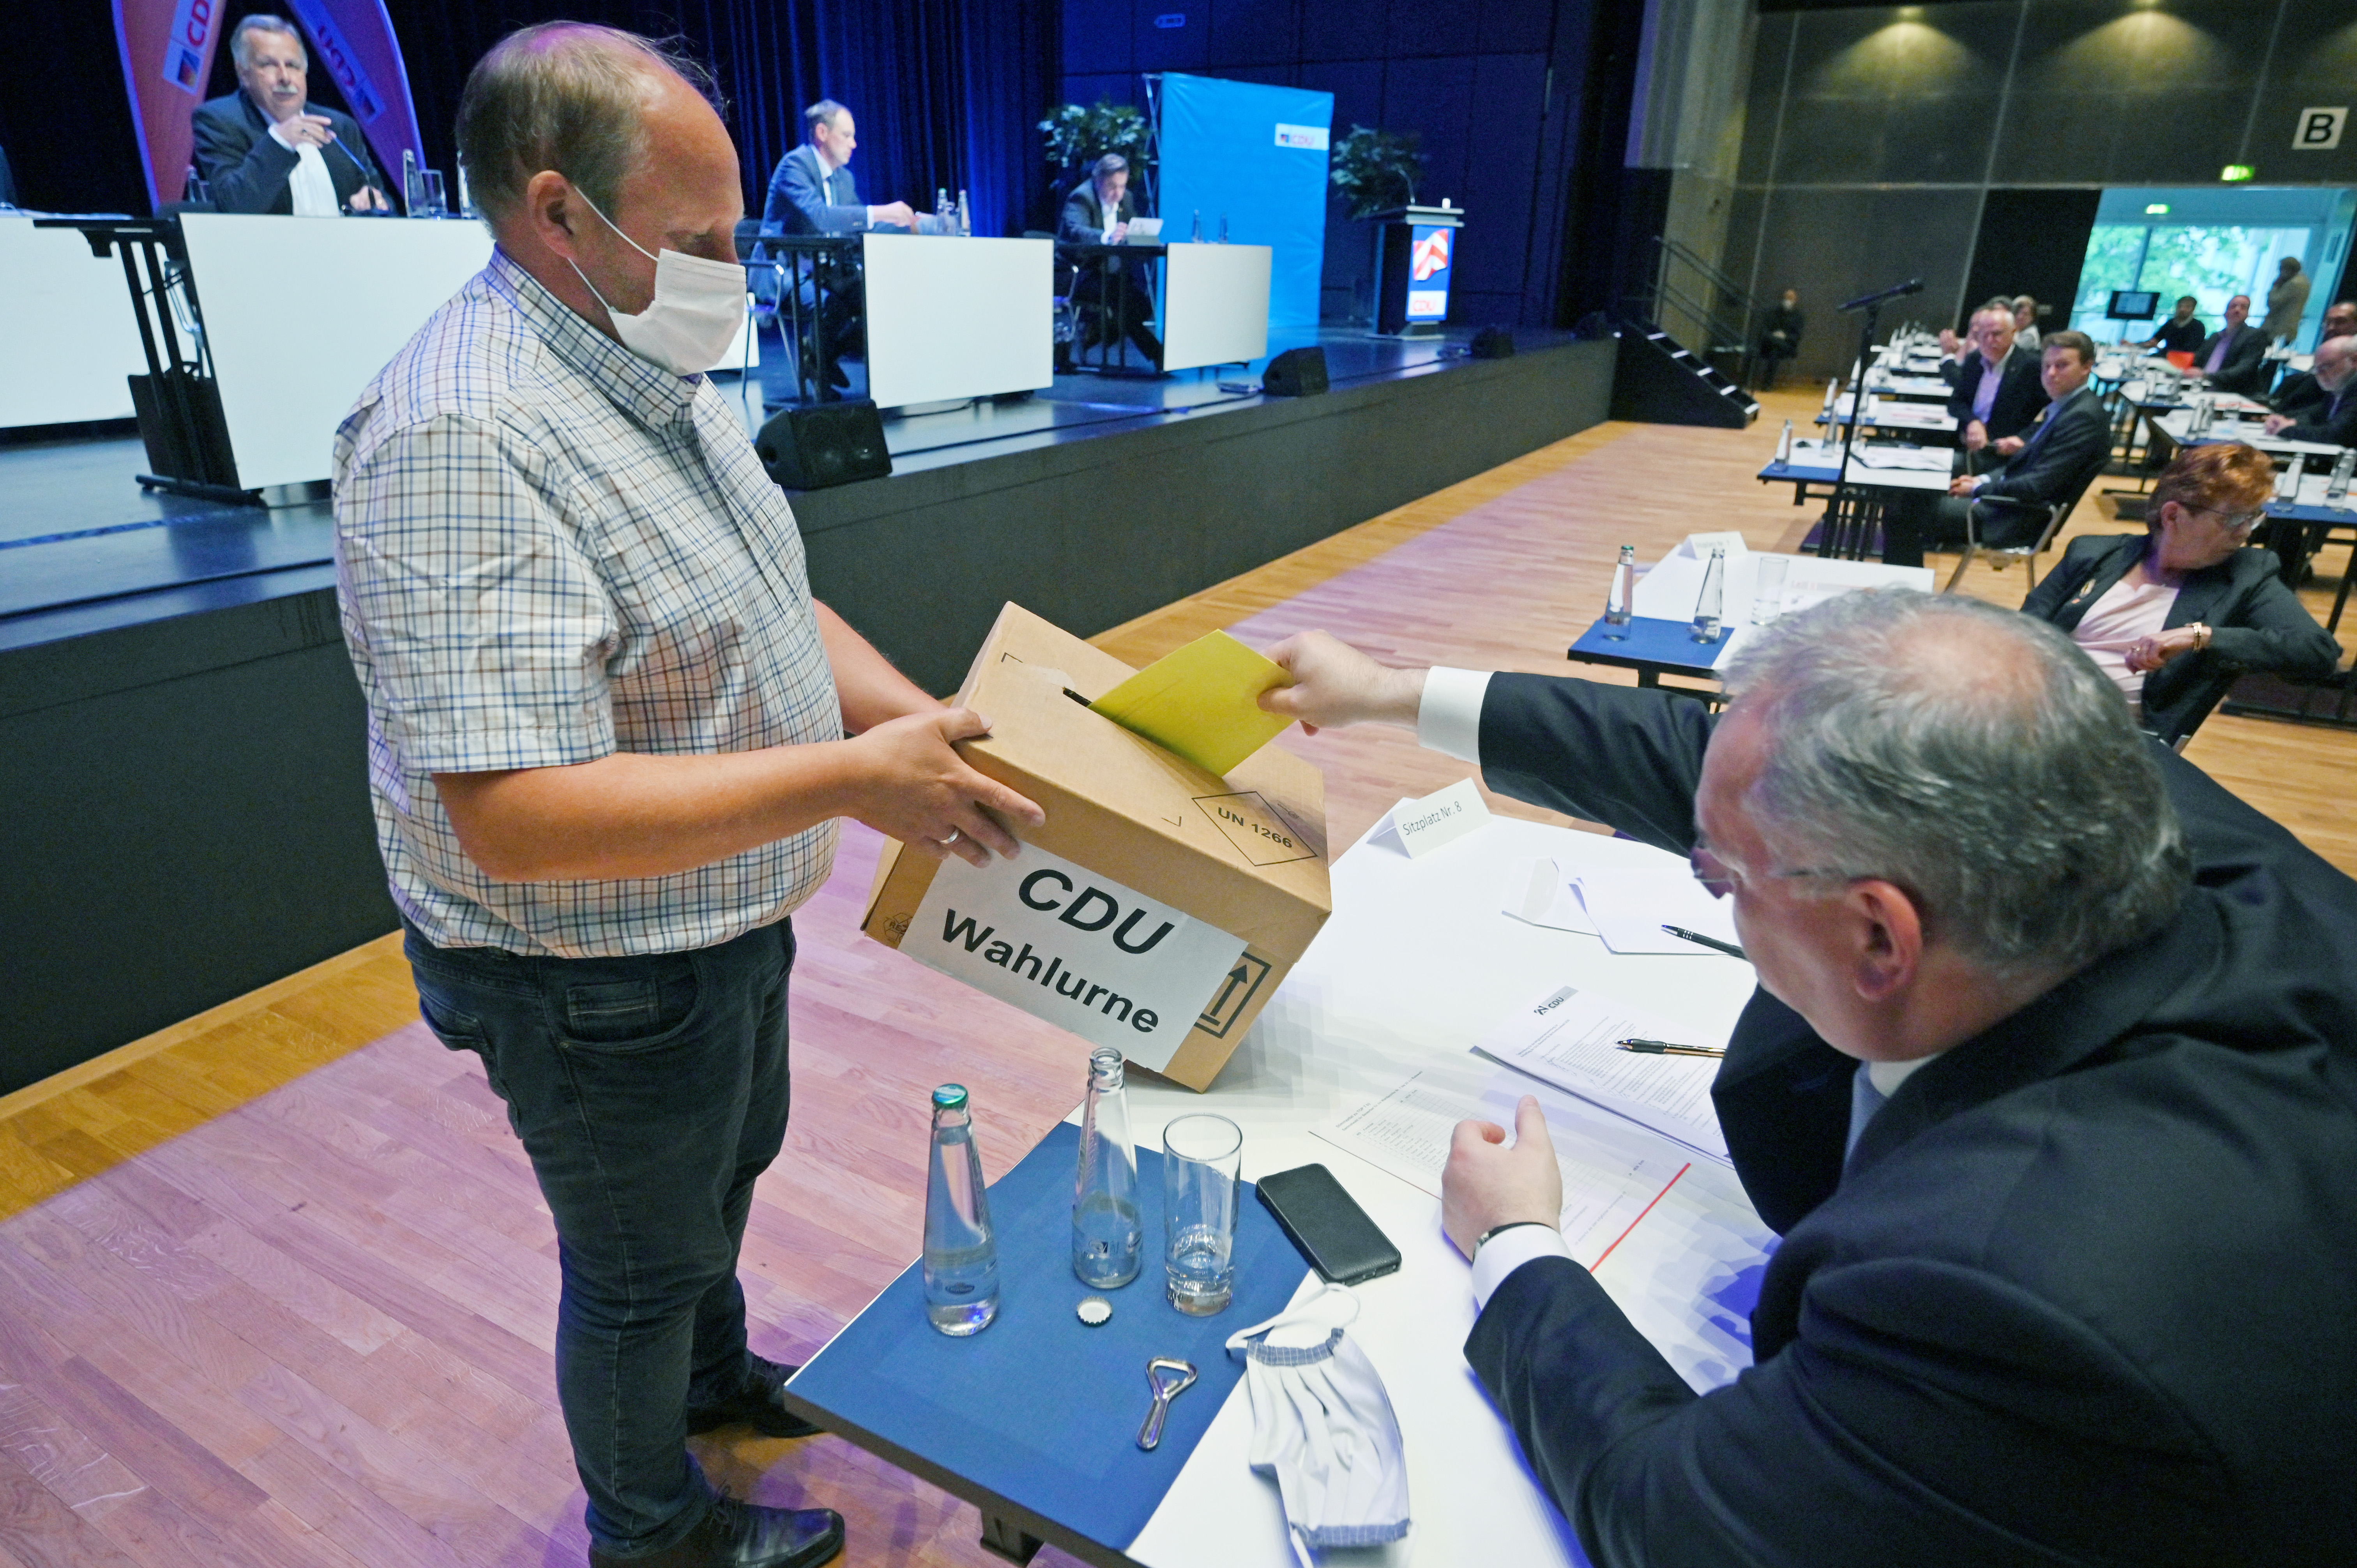 18.61.2020 - Parteitag - Nominierung Oberbürgermeister - Ralf Nettelstroth bei der Stimmabgabe. (Foto: Thomas F. Starke)